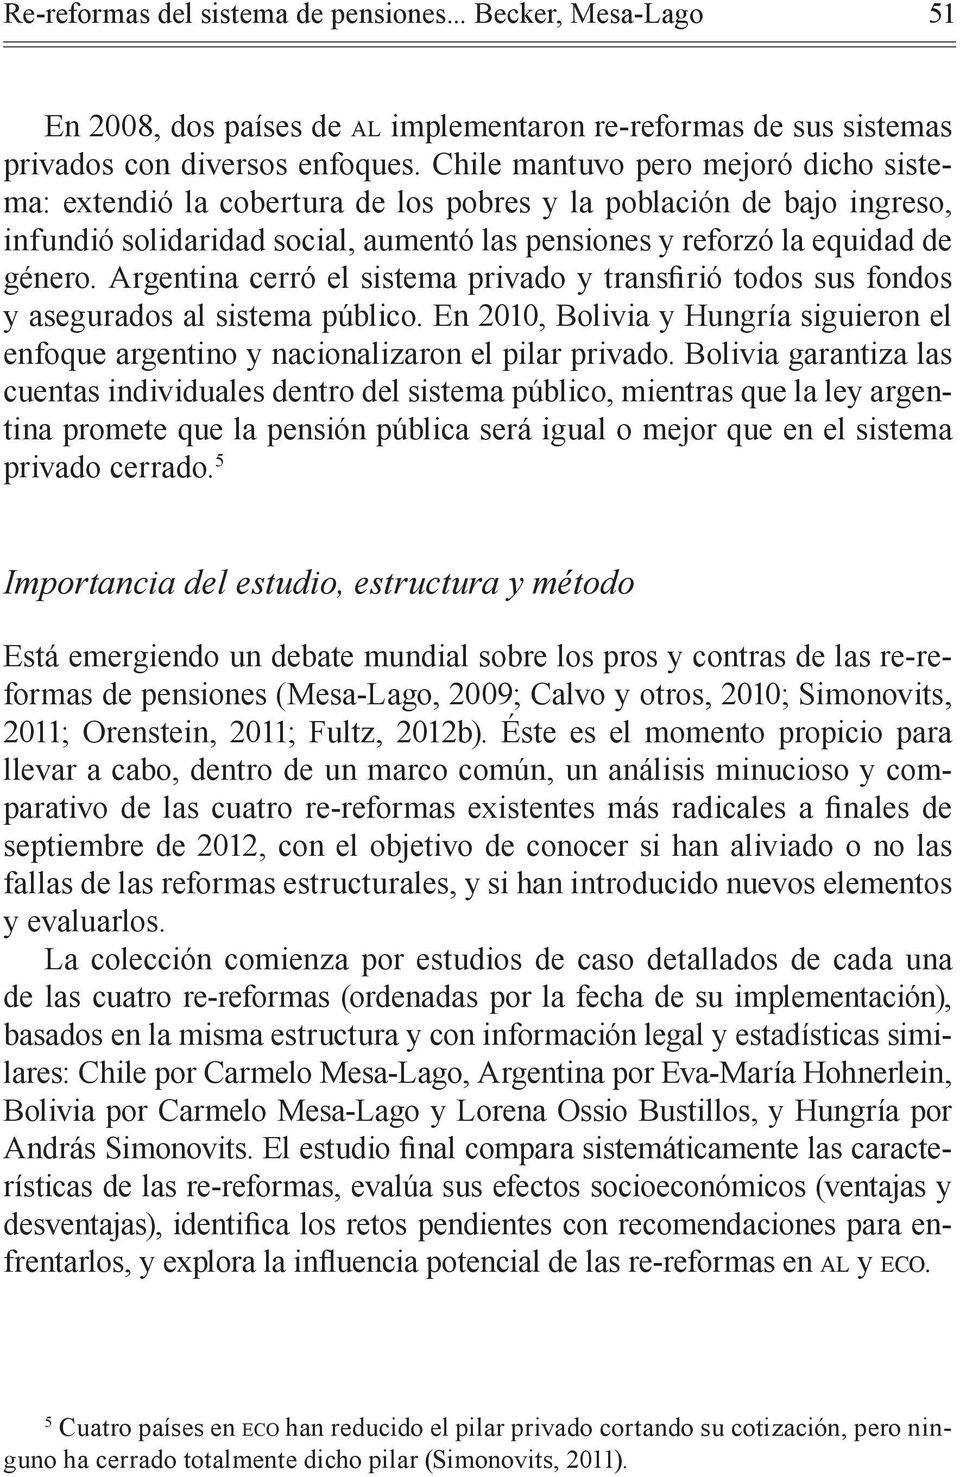 sistema público. En 2010, Bolivia y Hungría siguieron el enfoque argentino y nacionalizaron el pilar privado.